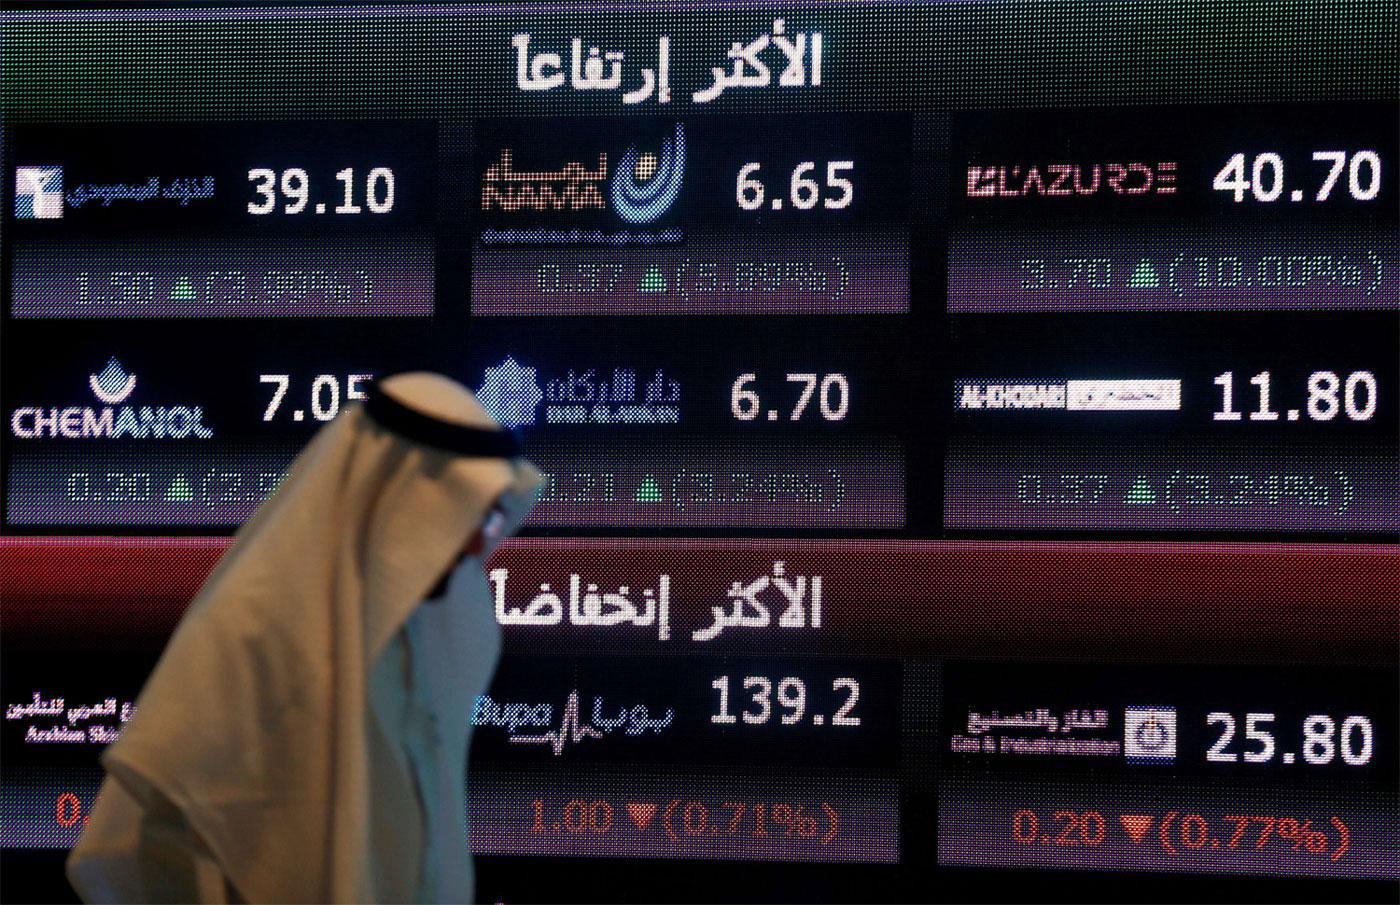 The Saudi stock exchange Tadawul